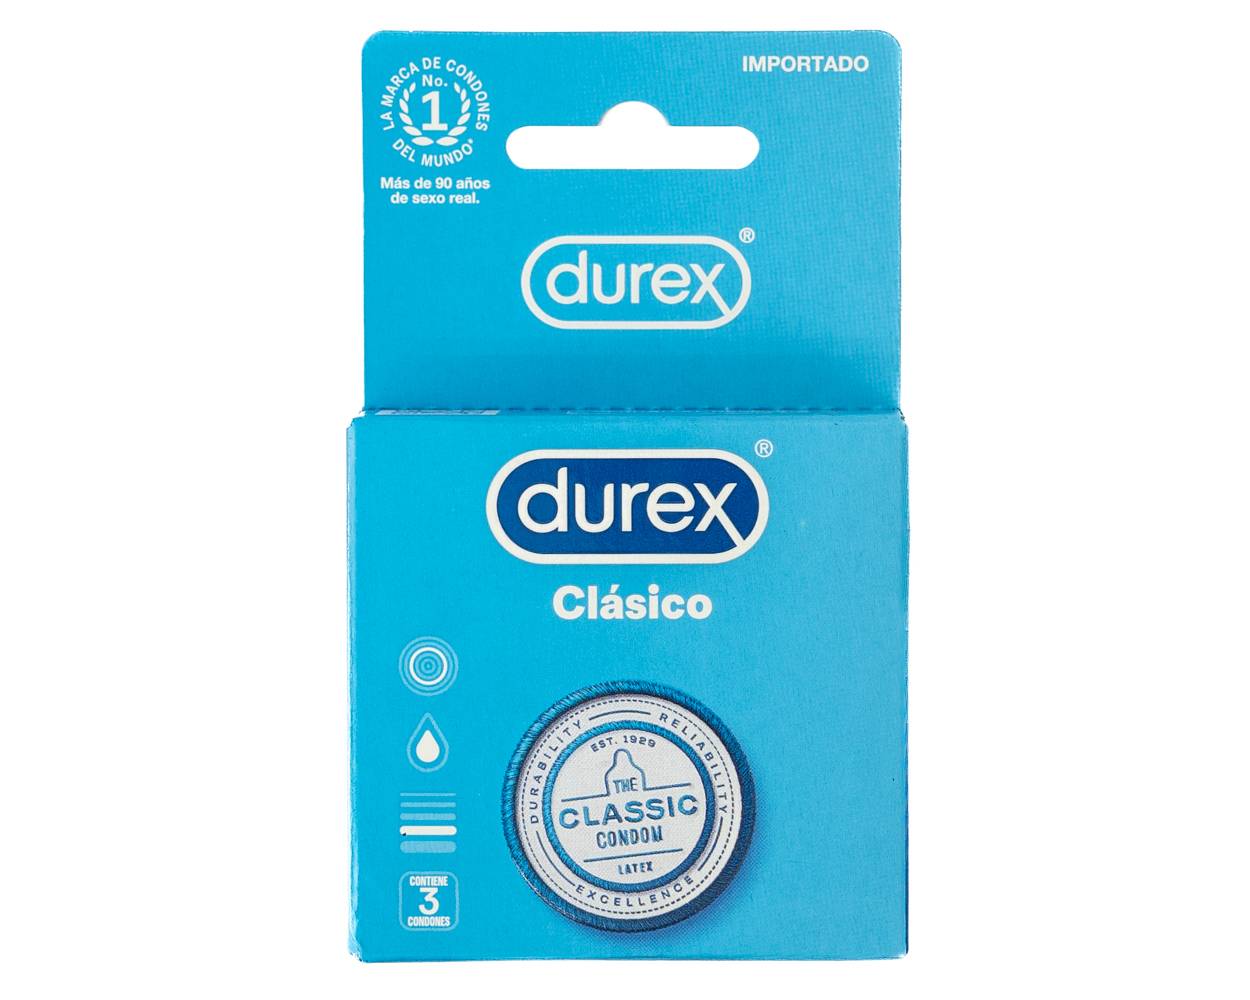 Durex preservativo clásico (3 un)